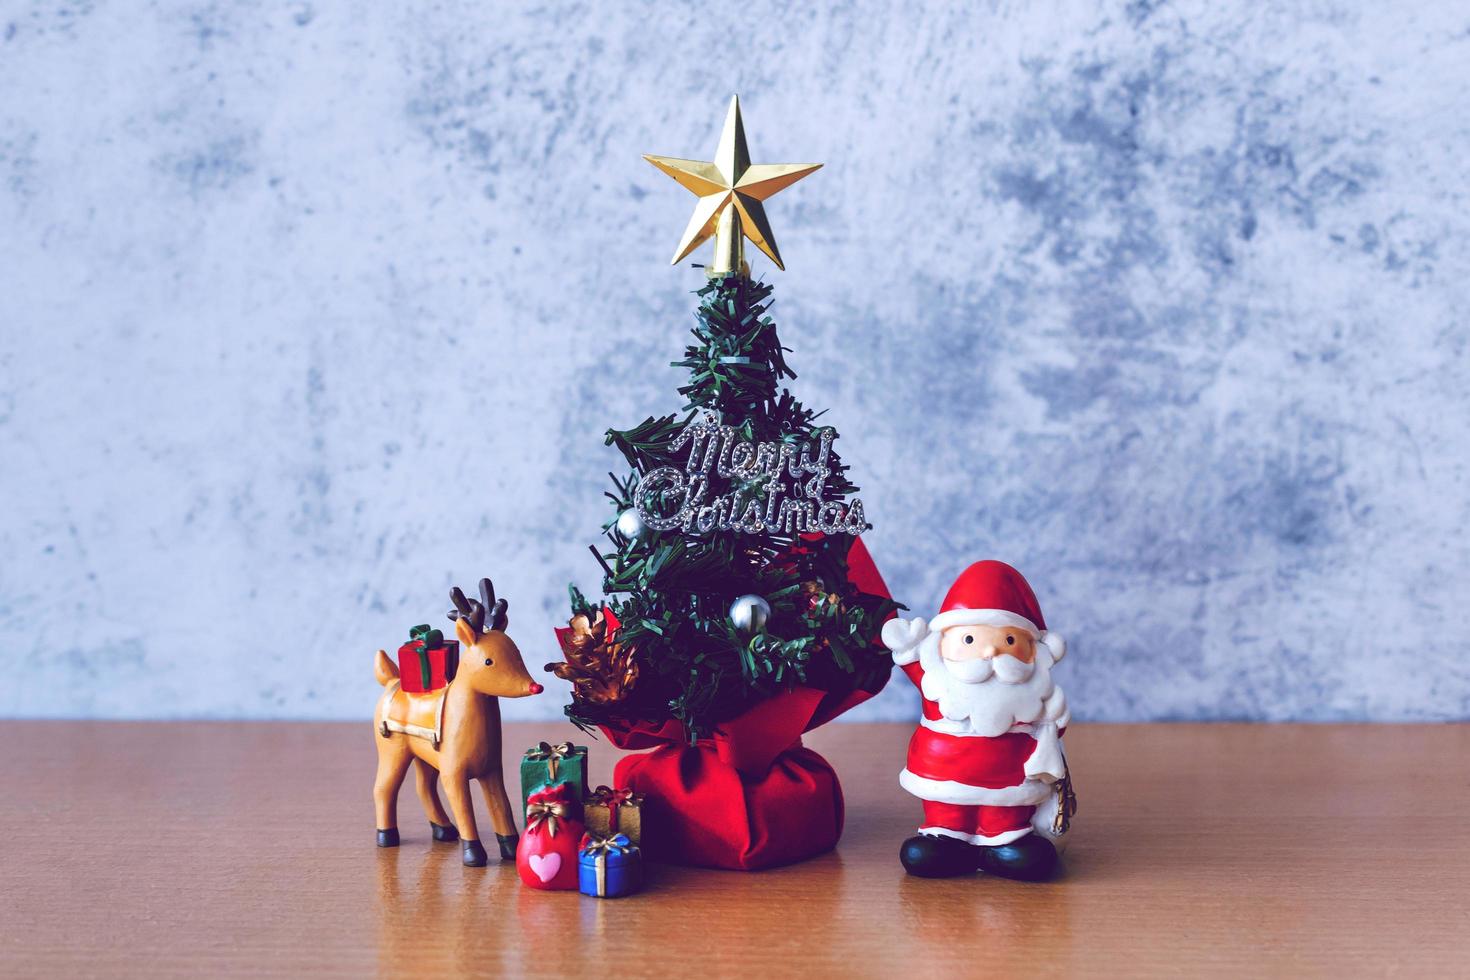 juldekoration - jultomten, träd och gåva på träbord. jul och gott nytt år koncept foto